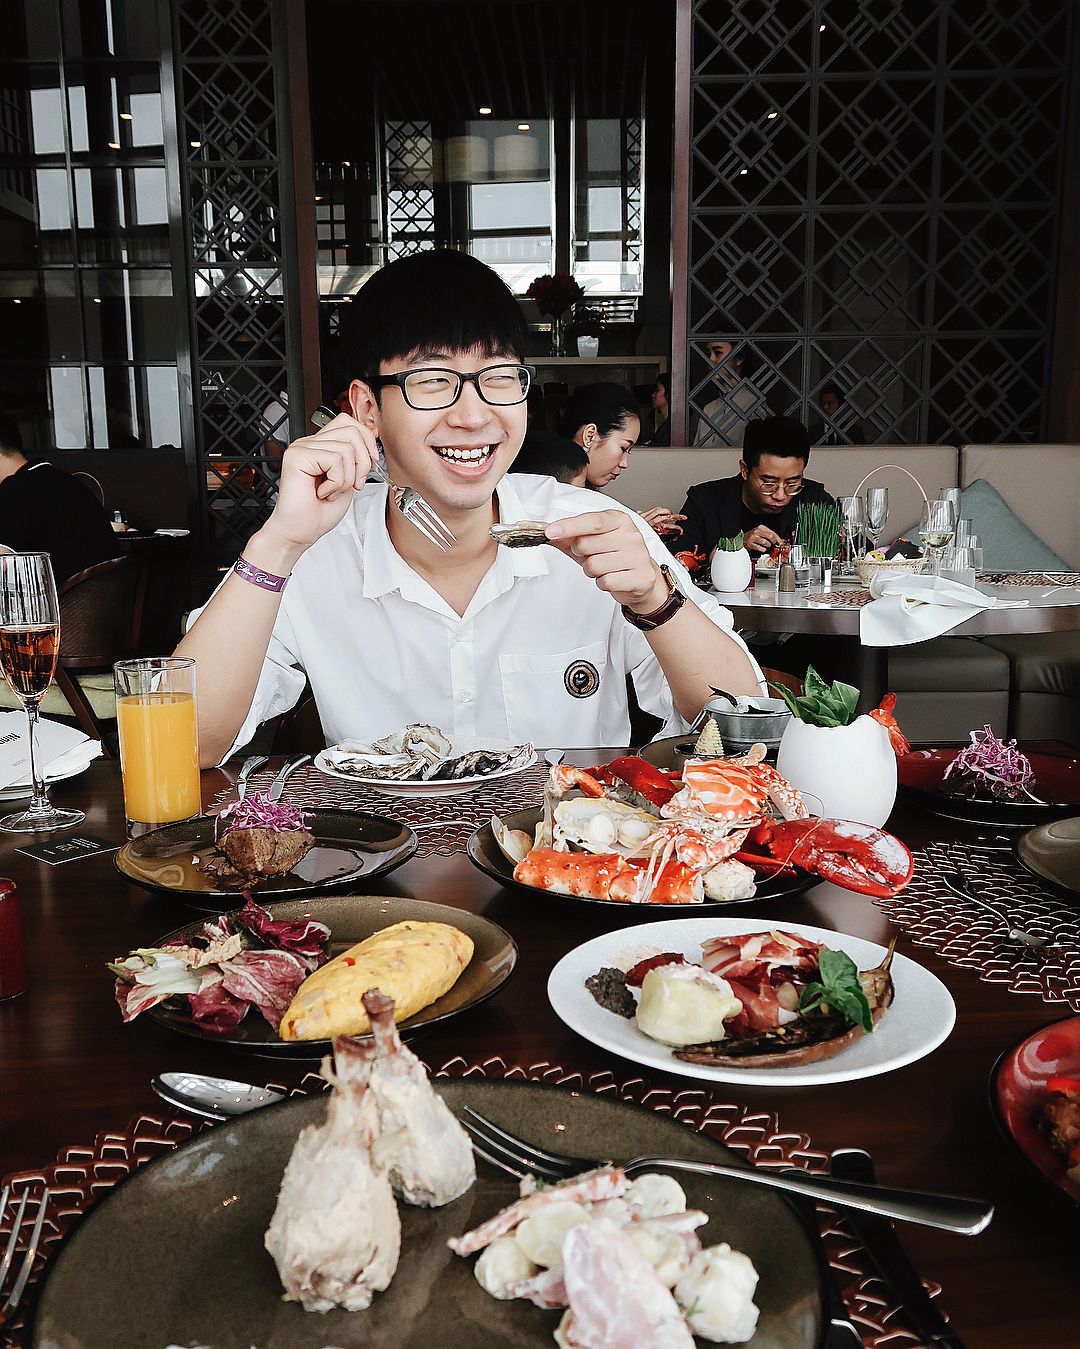 Vu Trong Ninh, a full-time food reviewer